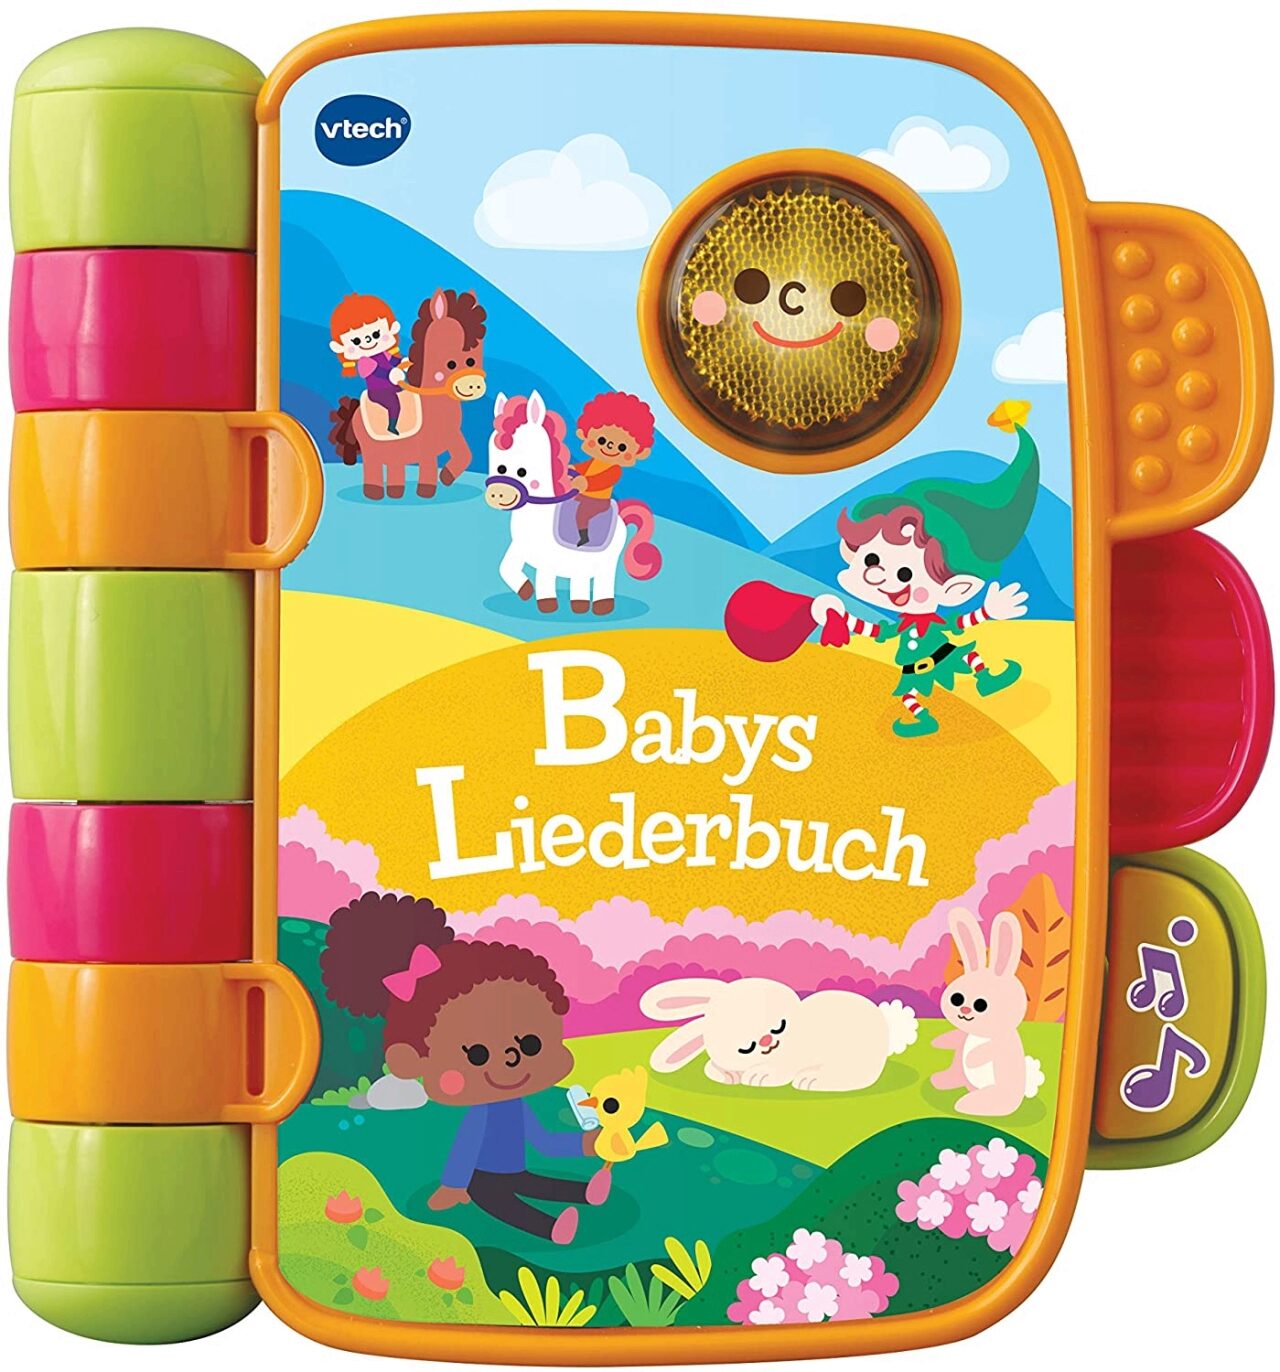 80-138364 VTECH Liederbuch Babys